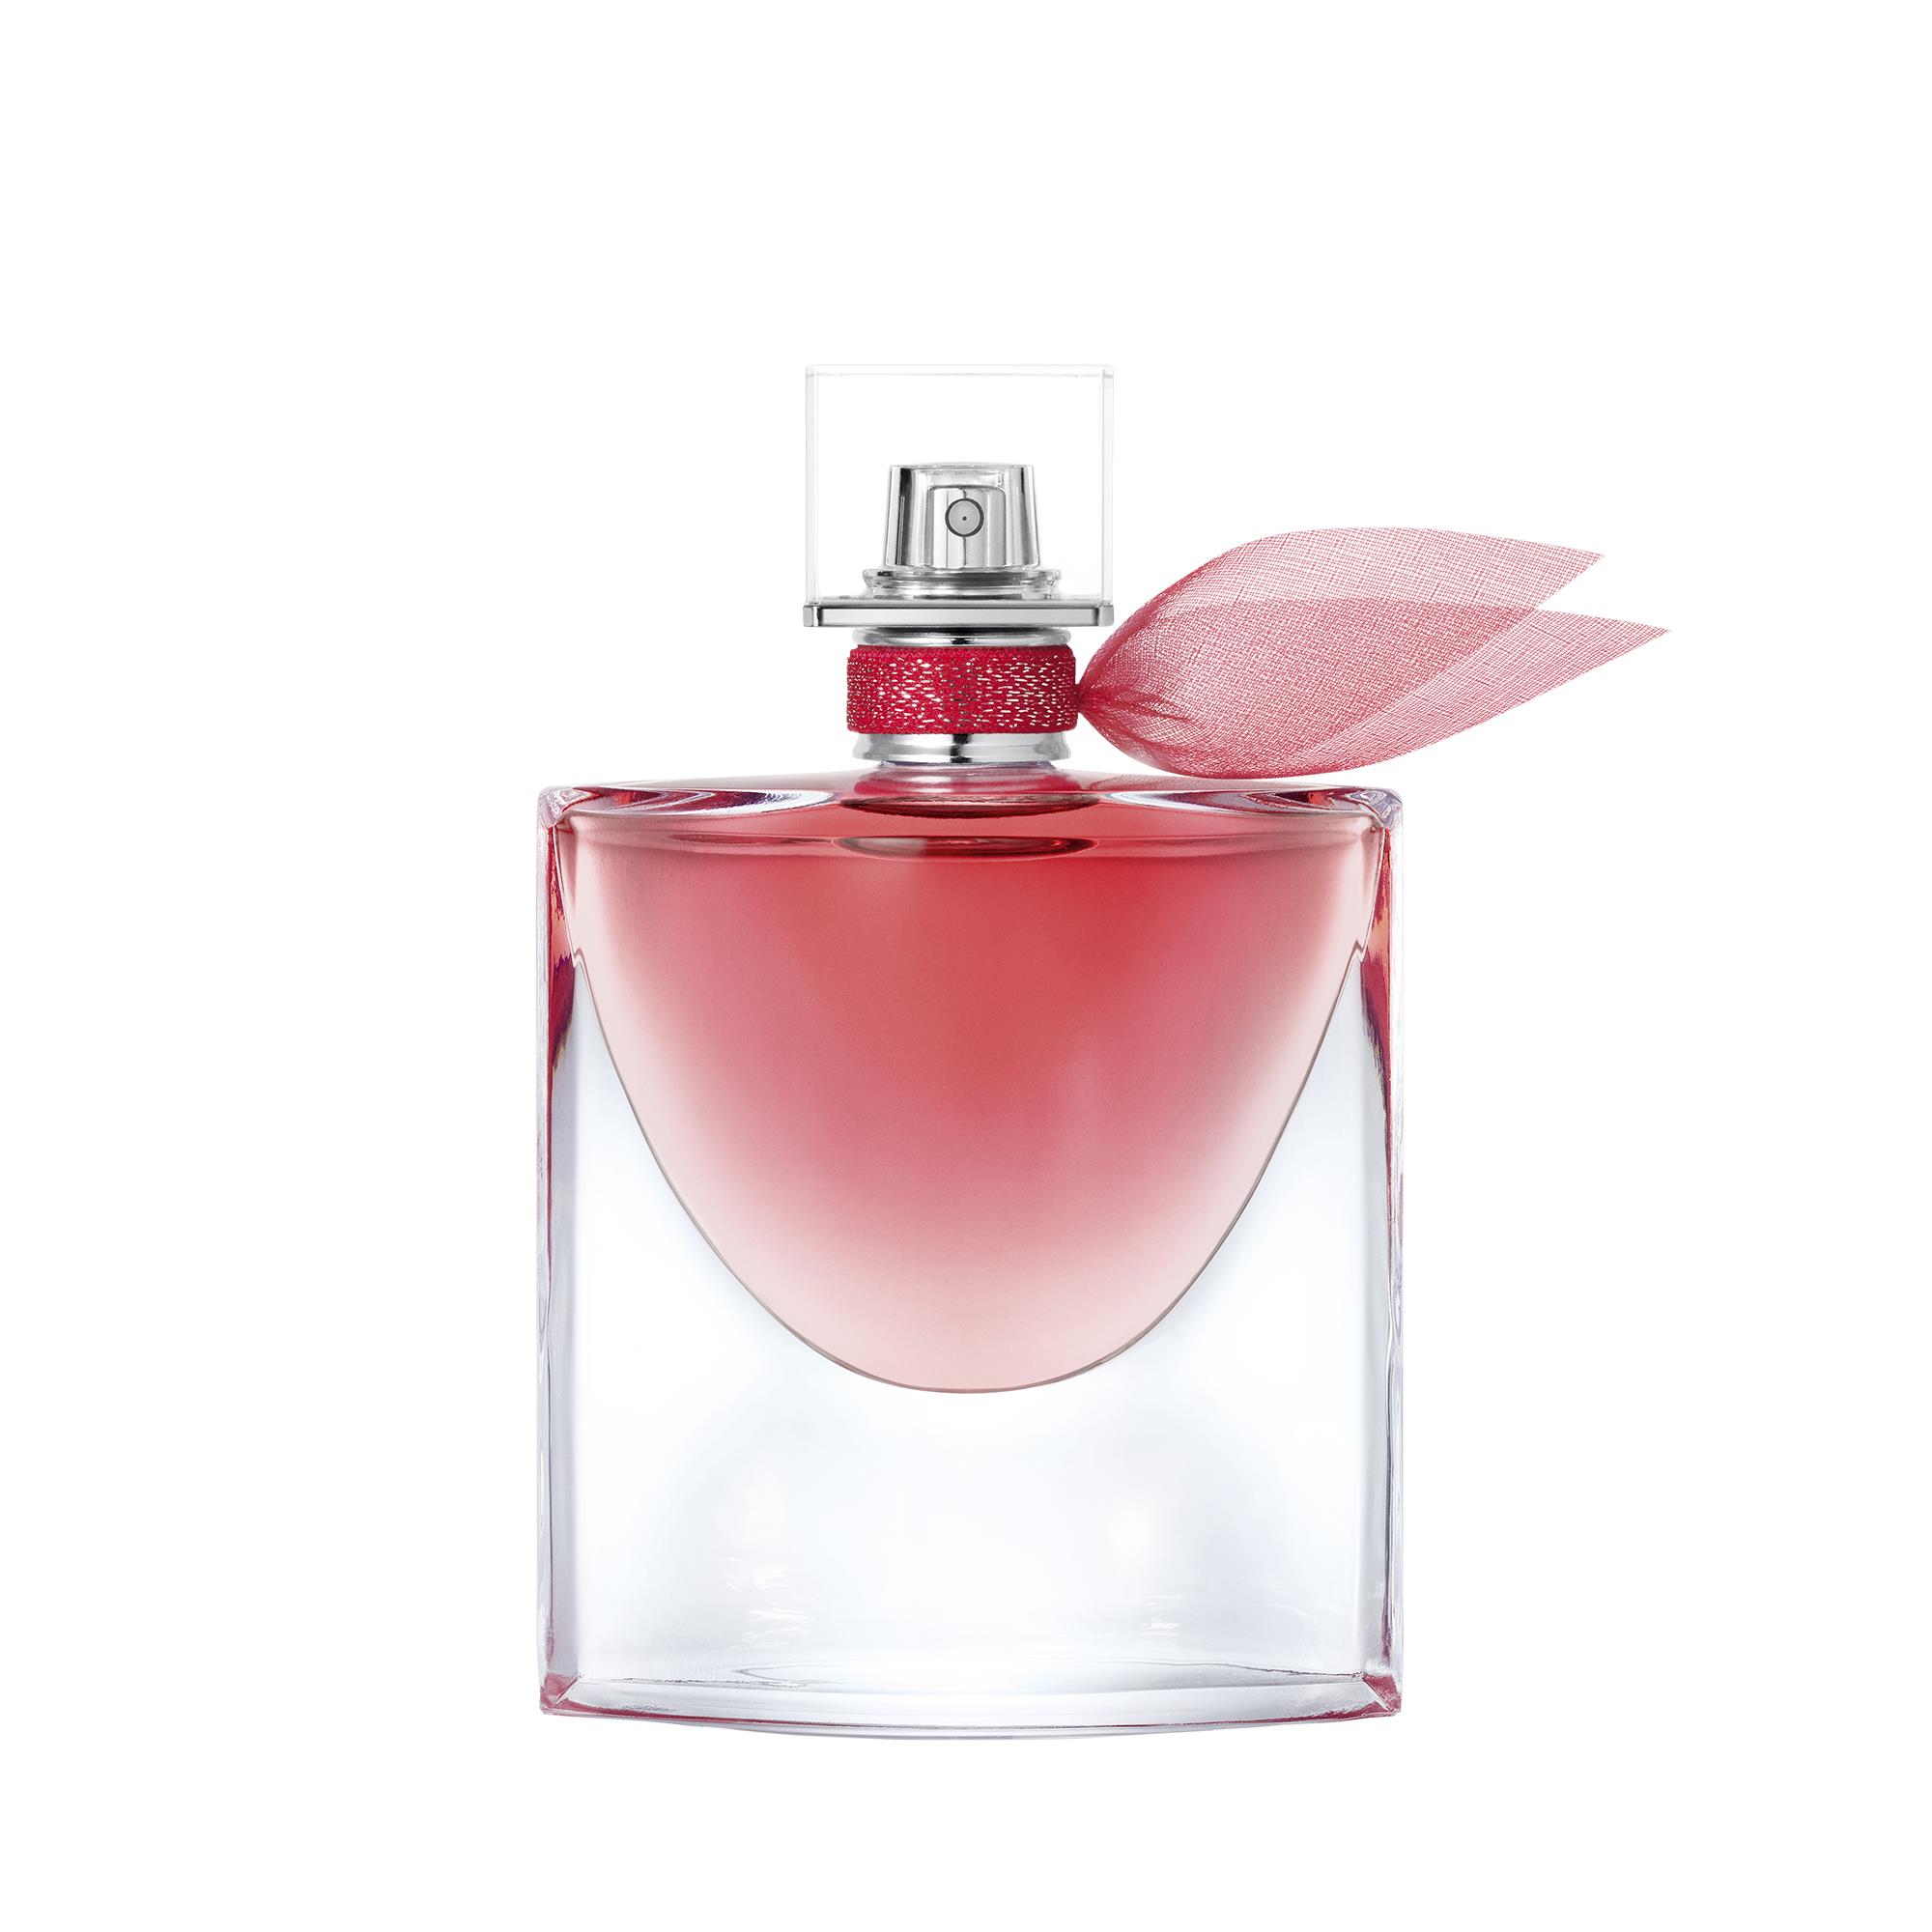 Lancome-Fragrance-La-Vie-Est-Belle-Intensement-50ml-0003614272964679-Front